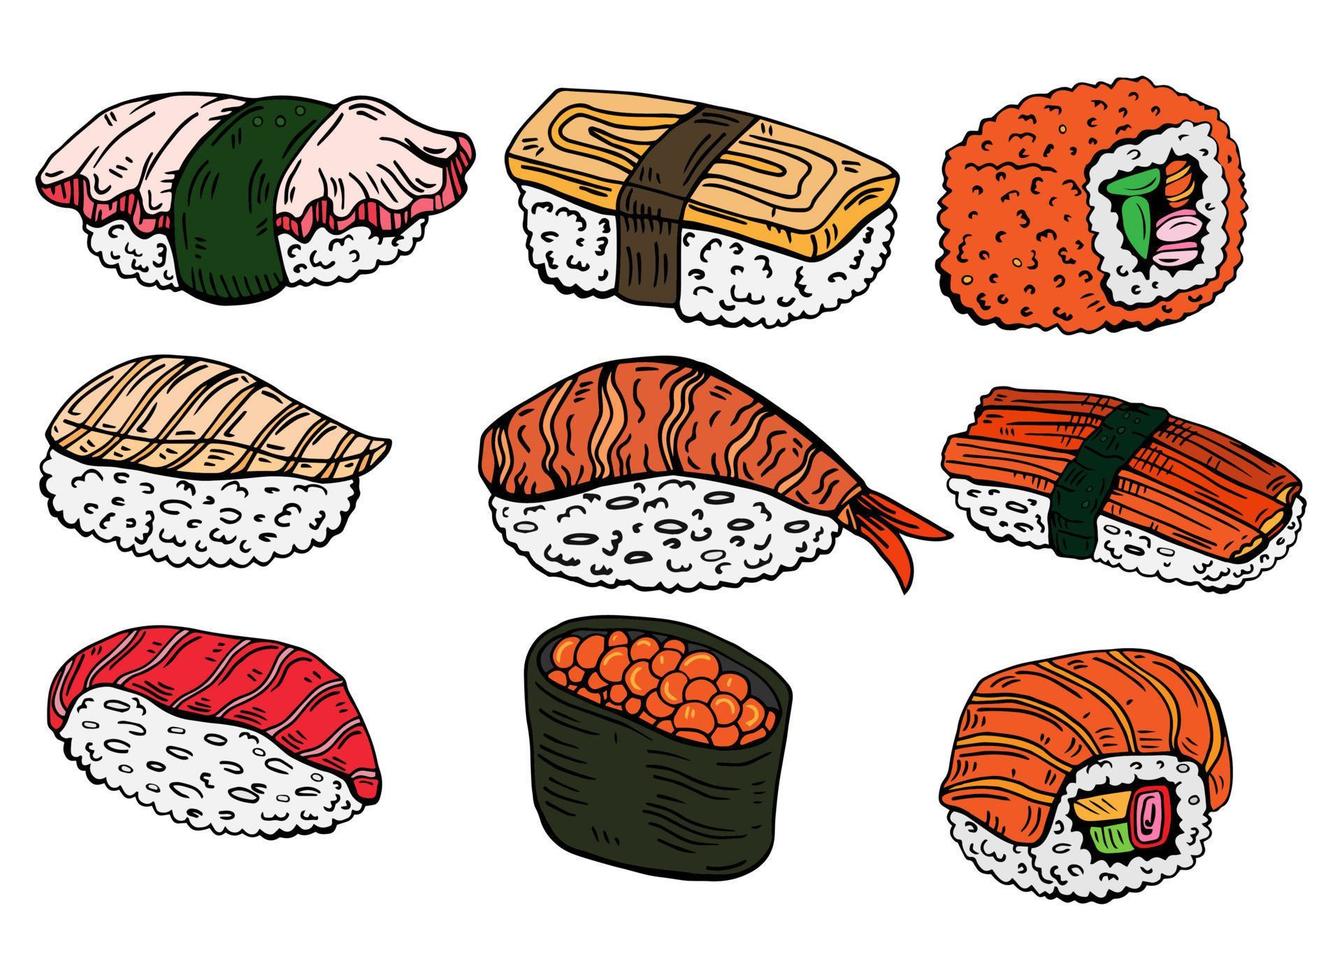 juego de sushi y rollos. platos de cocina tradicional japonesa - nigiri, temaki, tamago, sashimi, uramaki, futomaki. dibujo vectorial a mano alzada aislado en fondo blanco para el menú del restaurante asiático. vector